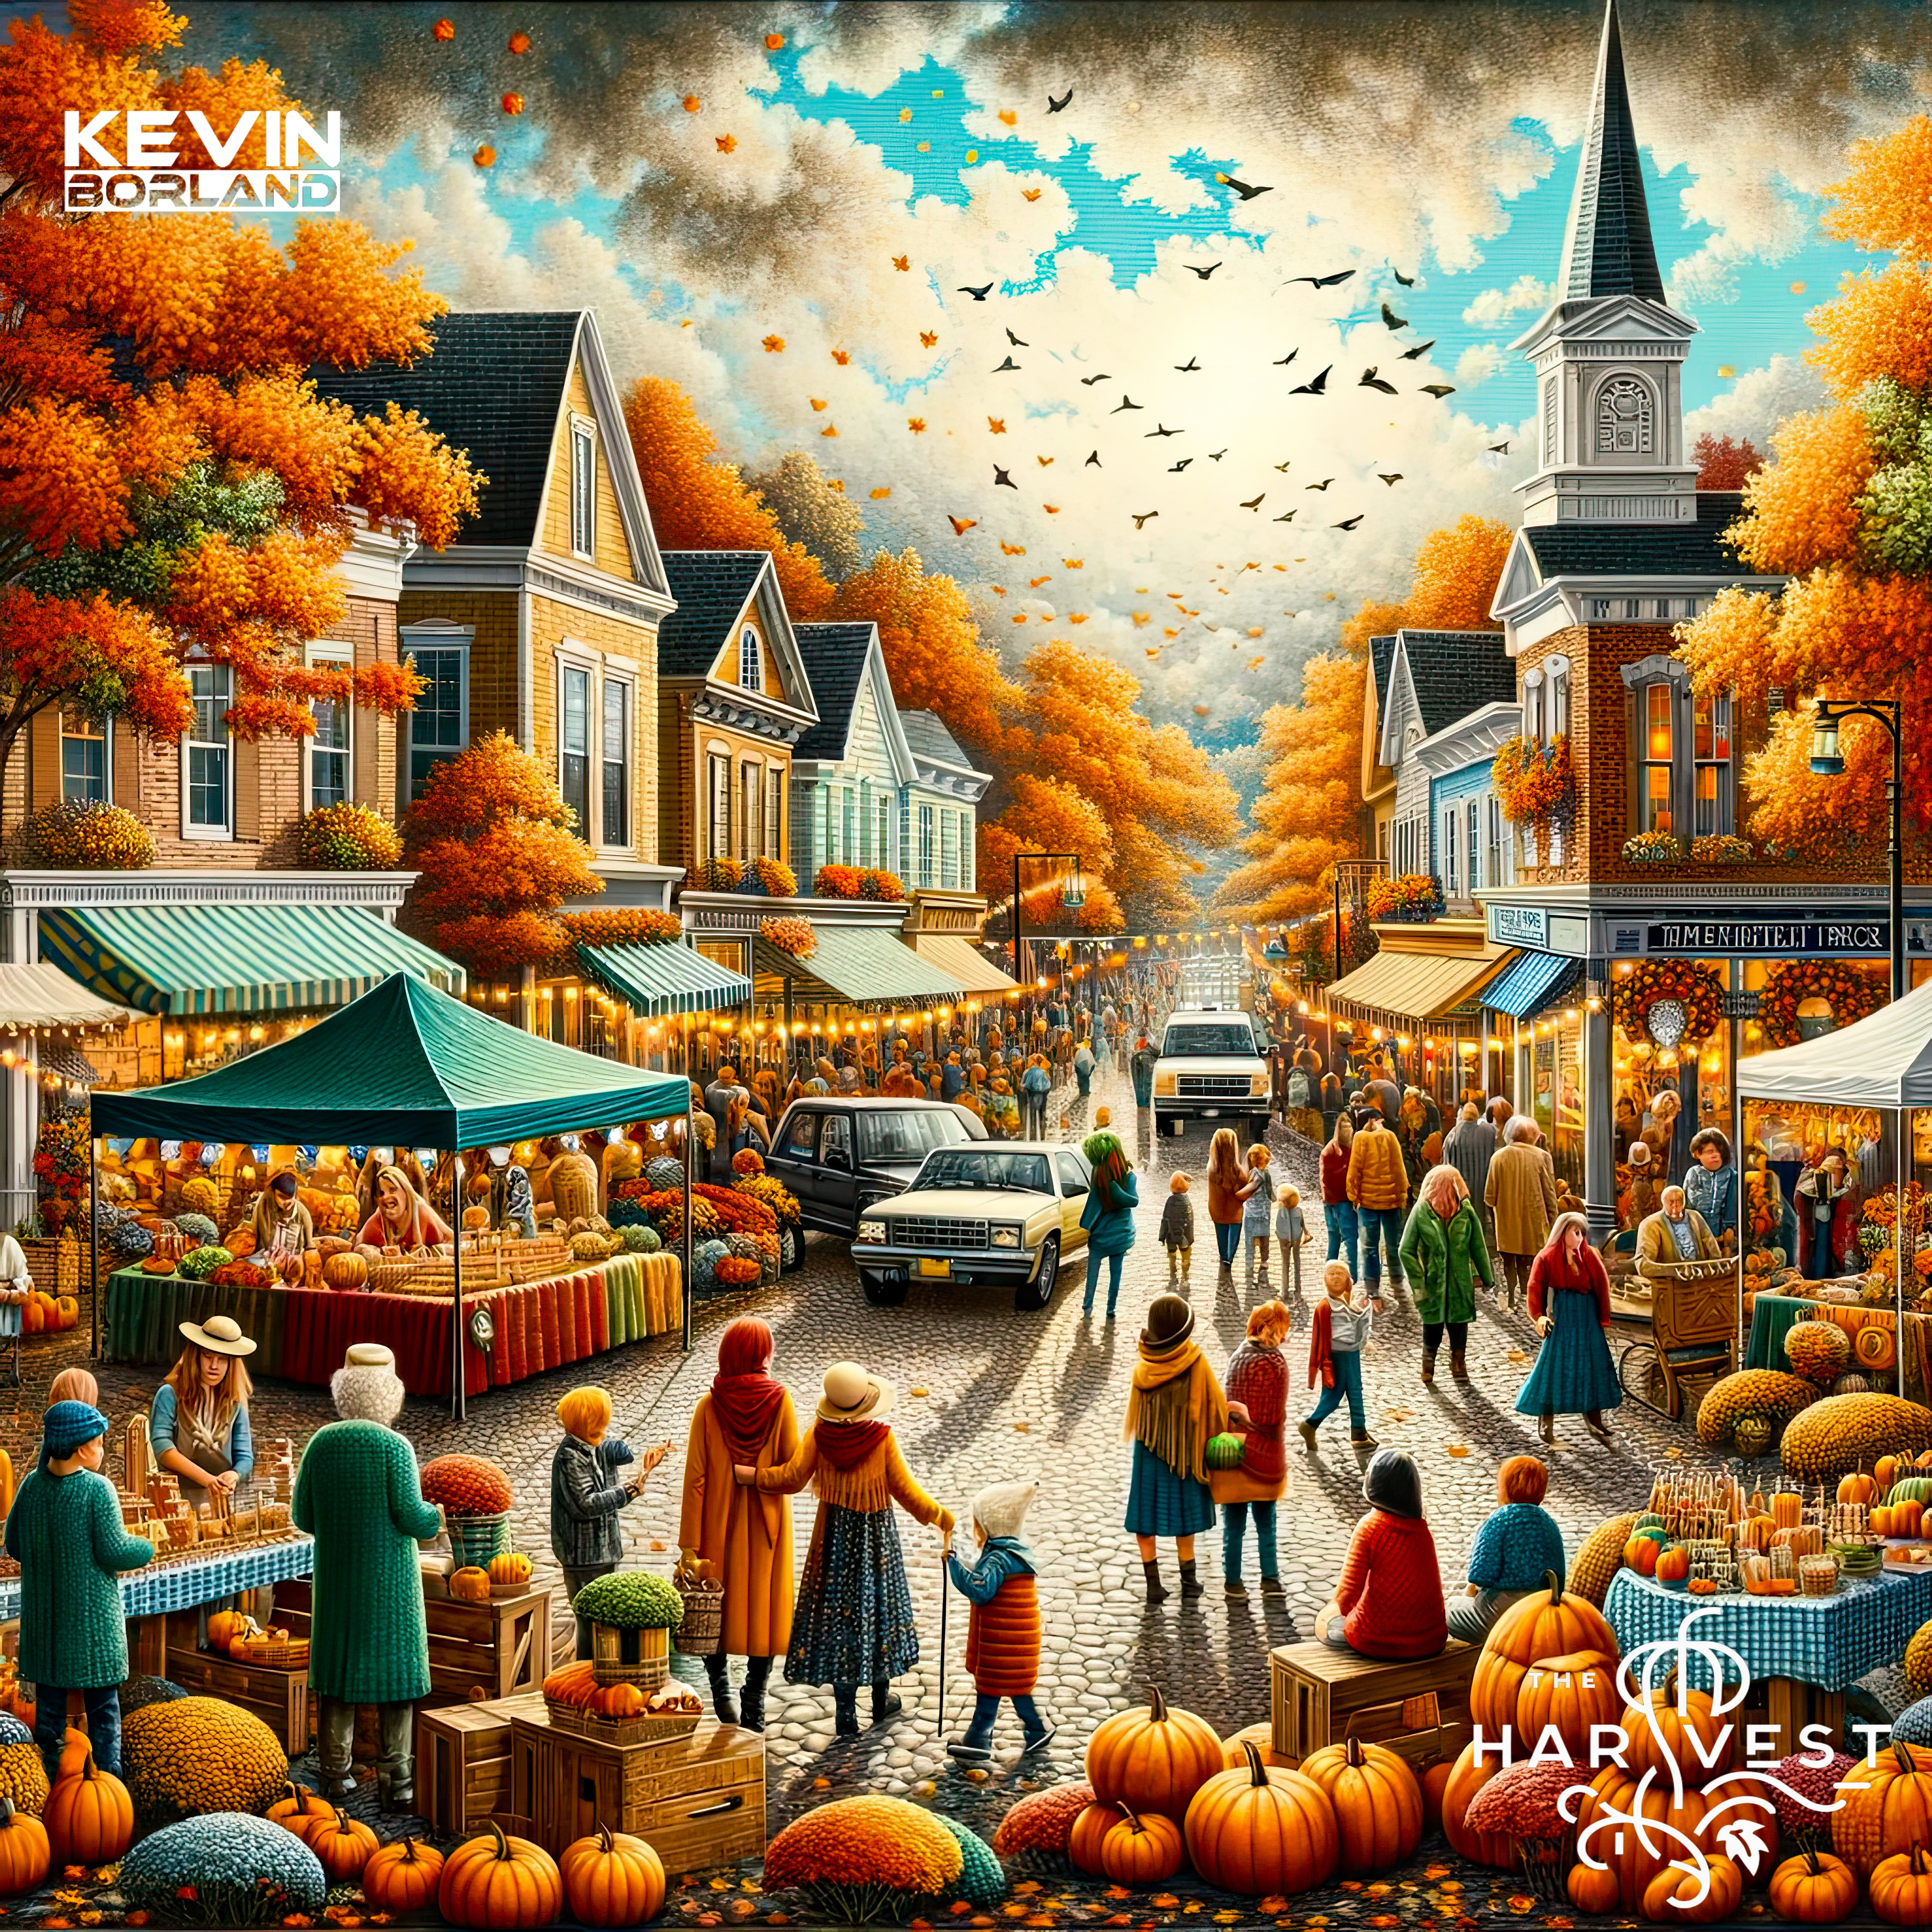 The Harvest Album Cover